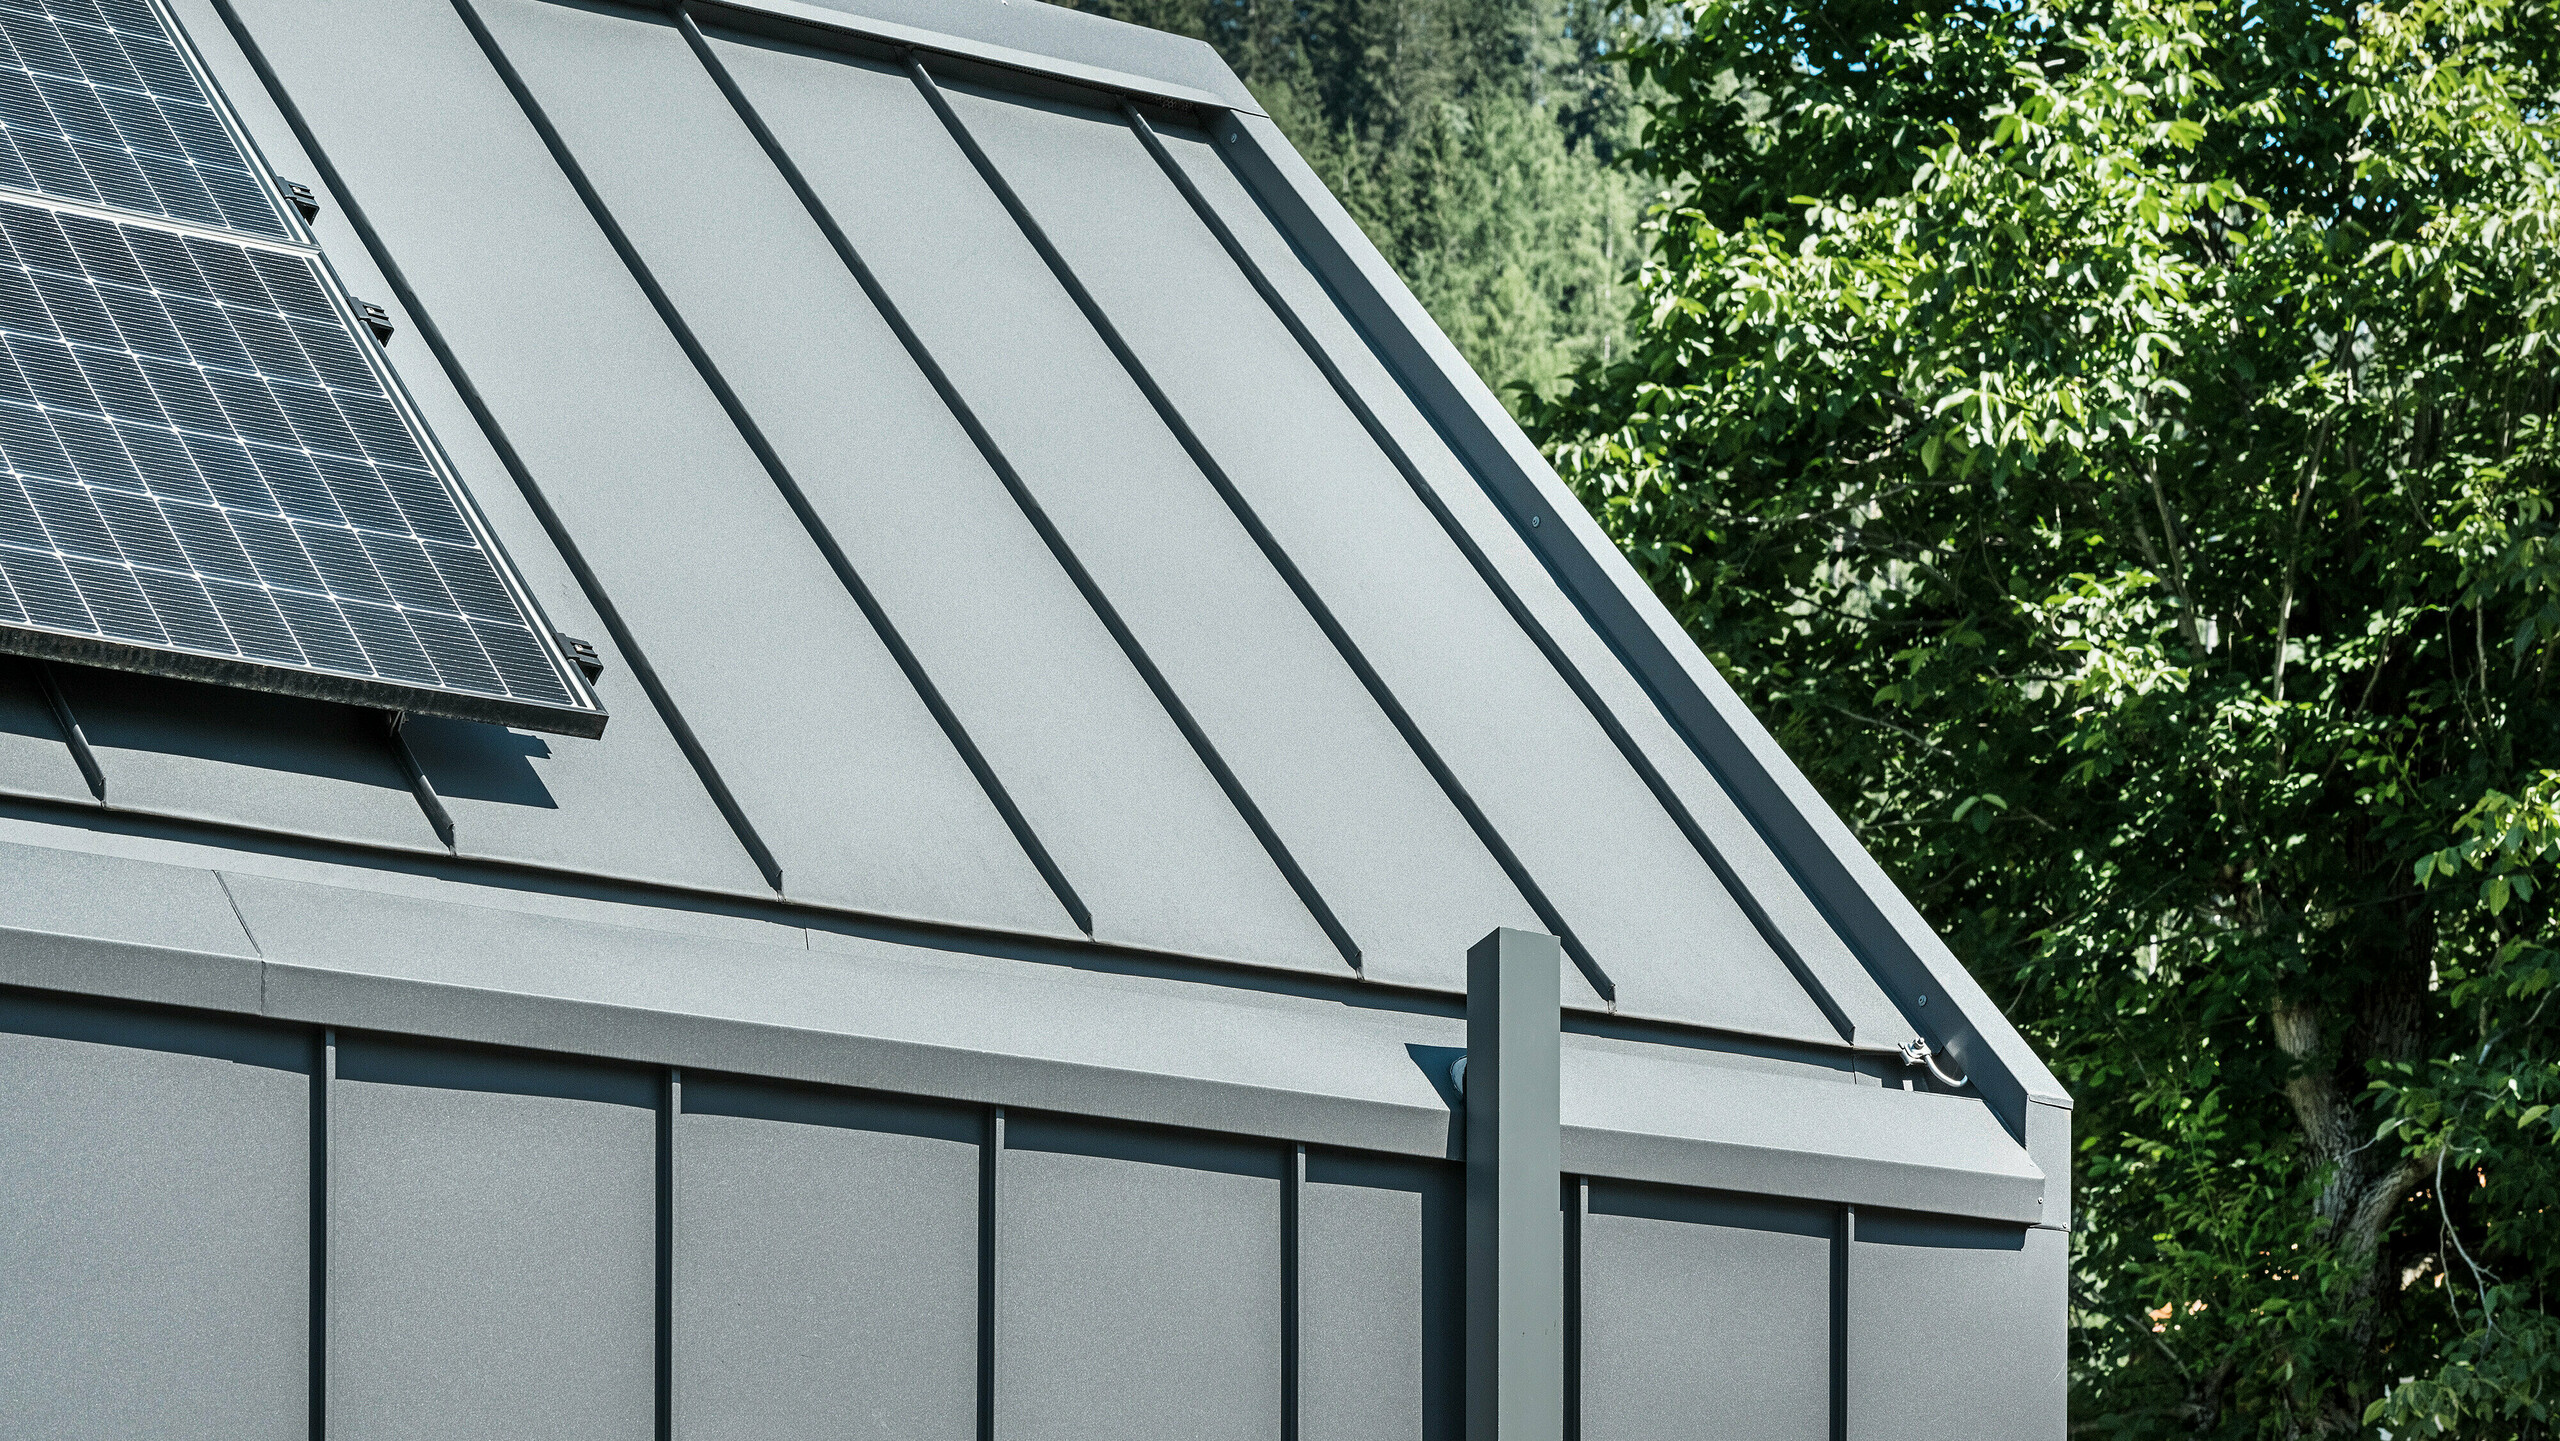 Detailný záber na strechu a fasádu moderného rodinného domu v rakúskom Pogieri s udržateľným a odolným hliníkovým plášťom PREFA. Strecha a fasáda sú pokryté zvitkovým plechom PREFALZ vo farbe P.10 tmavošedá, čo dodáva domu elegantný a nadčasový vzhľad. Dom je navyše vybavený kvalitným odvodnením striech, ktoré dokonale spája funkčnosť a estetiku v architektúre. Odvodnenie strechy prebieha cez hranatú rúru PREFA - tiež v tmavošedej farbe a fotovoltický systém na streche viditeľný na ľavom okraji obrázku podčiarkuje trvalo udržateľný koncept budovy. V pozadí je vidieť zelené stromy a modrú oblohu.